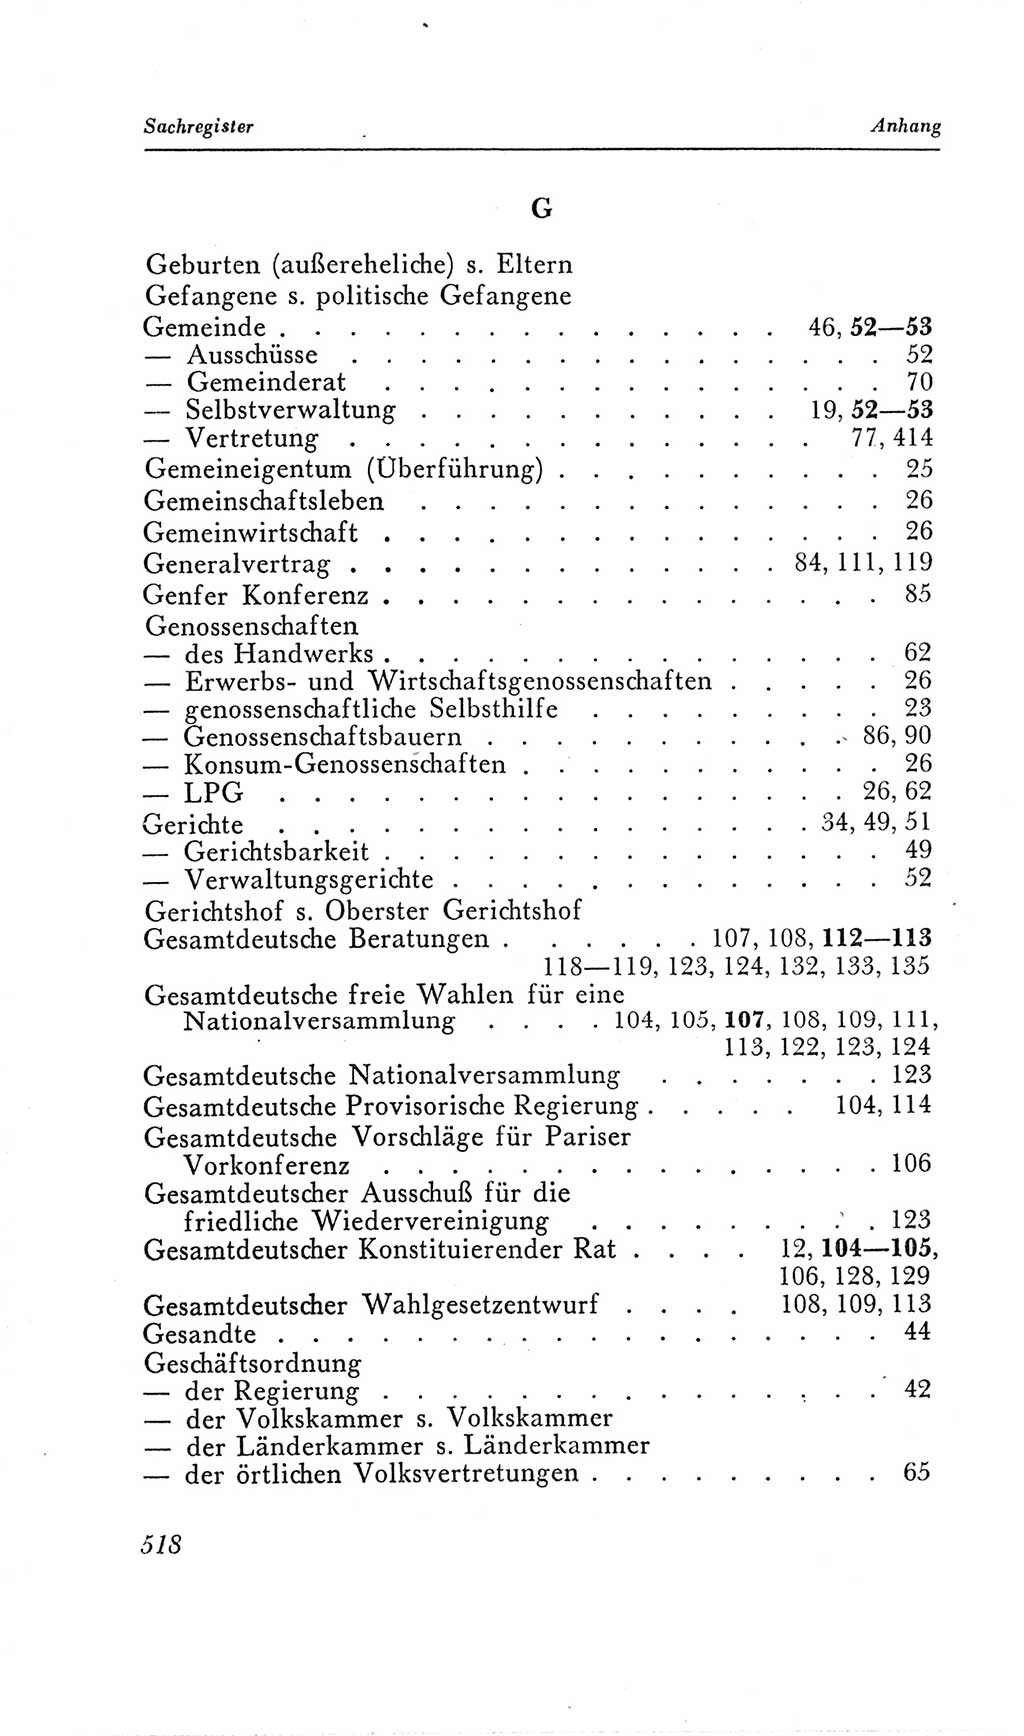 Handbuch der Volkskammer (VK) der Deutschen Demokratischen Republik (DDR), 2. Wahlperiode 1954-1958, Seite 518 (Hdb. VK. DDR, 2. WP. 1954-1958, S. 518)